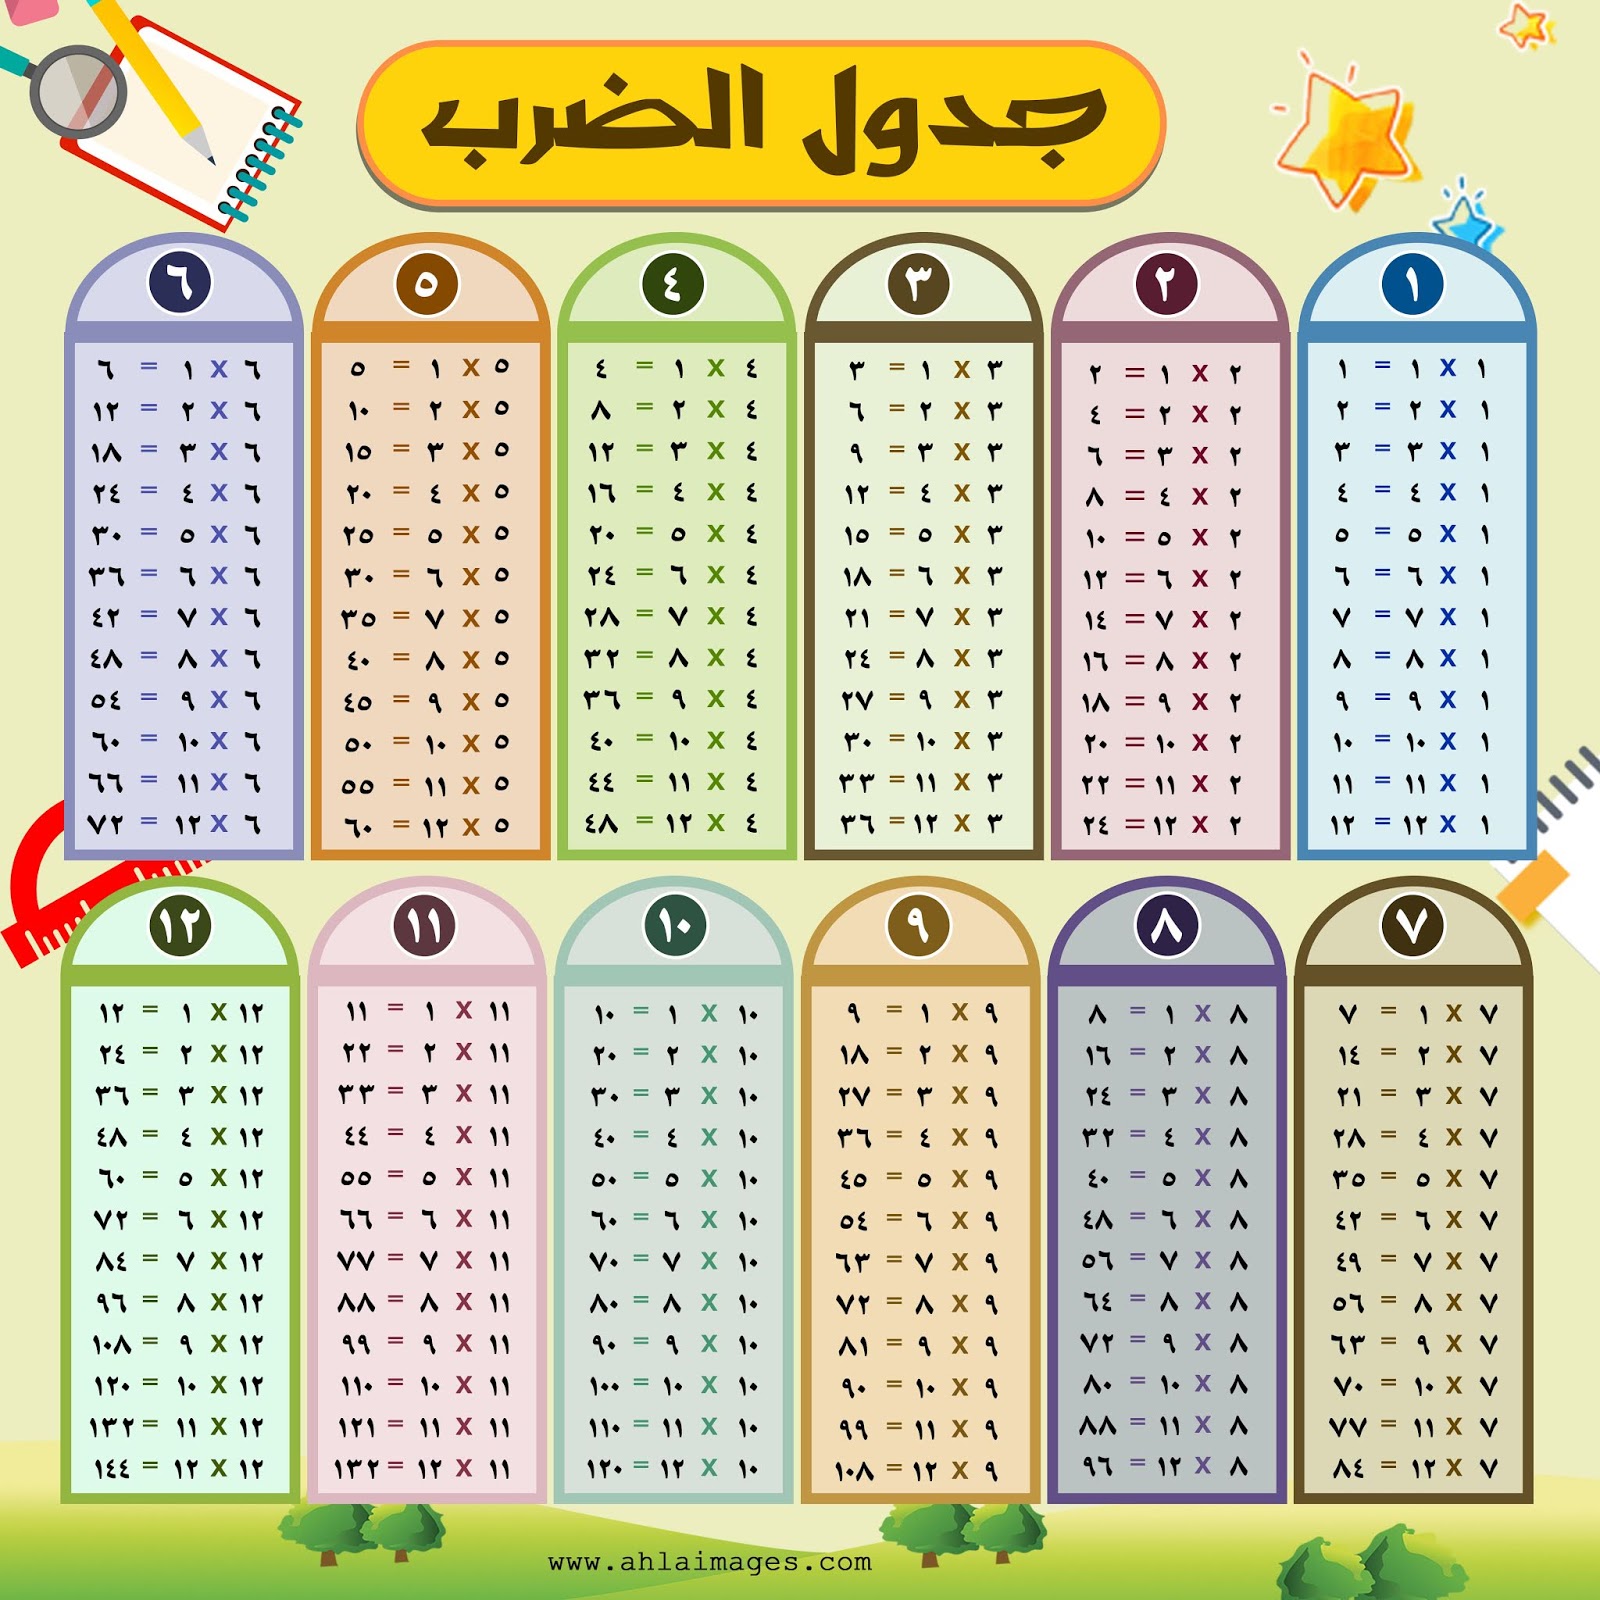 12 بالعربي جدول الضرب عربي كامل جاهز للطباعة